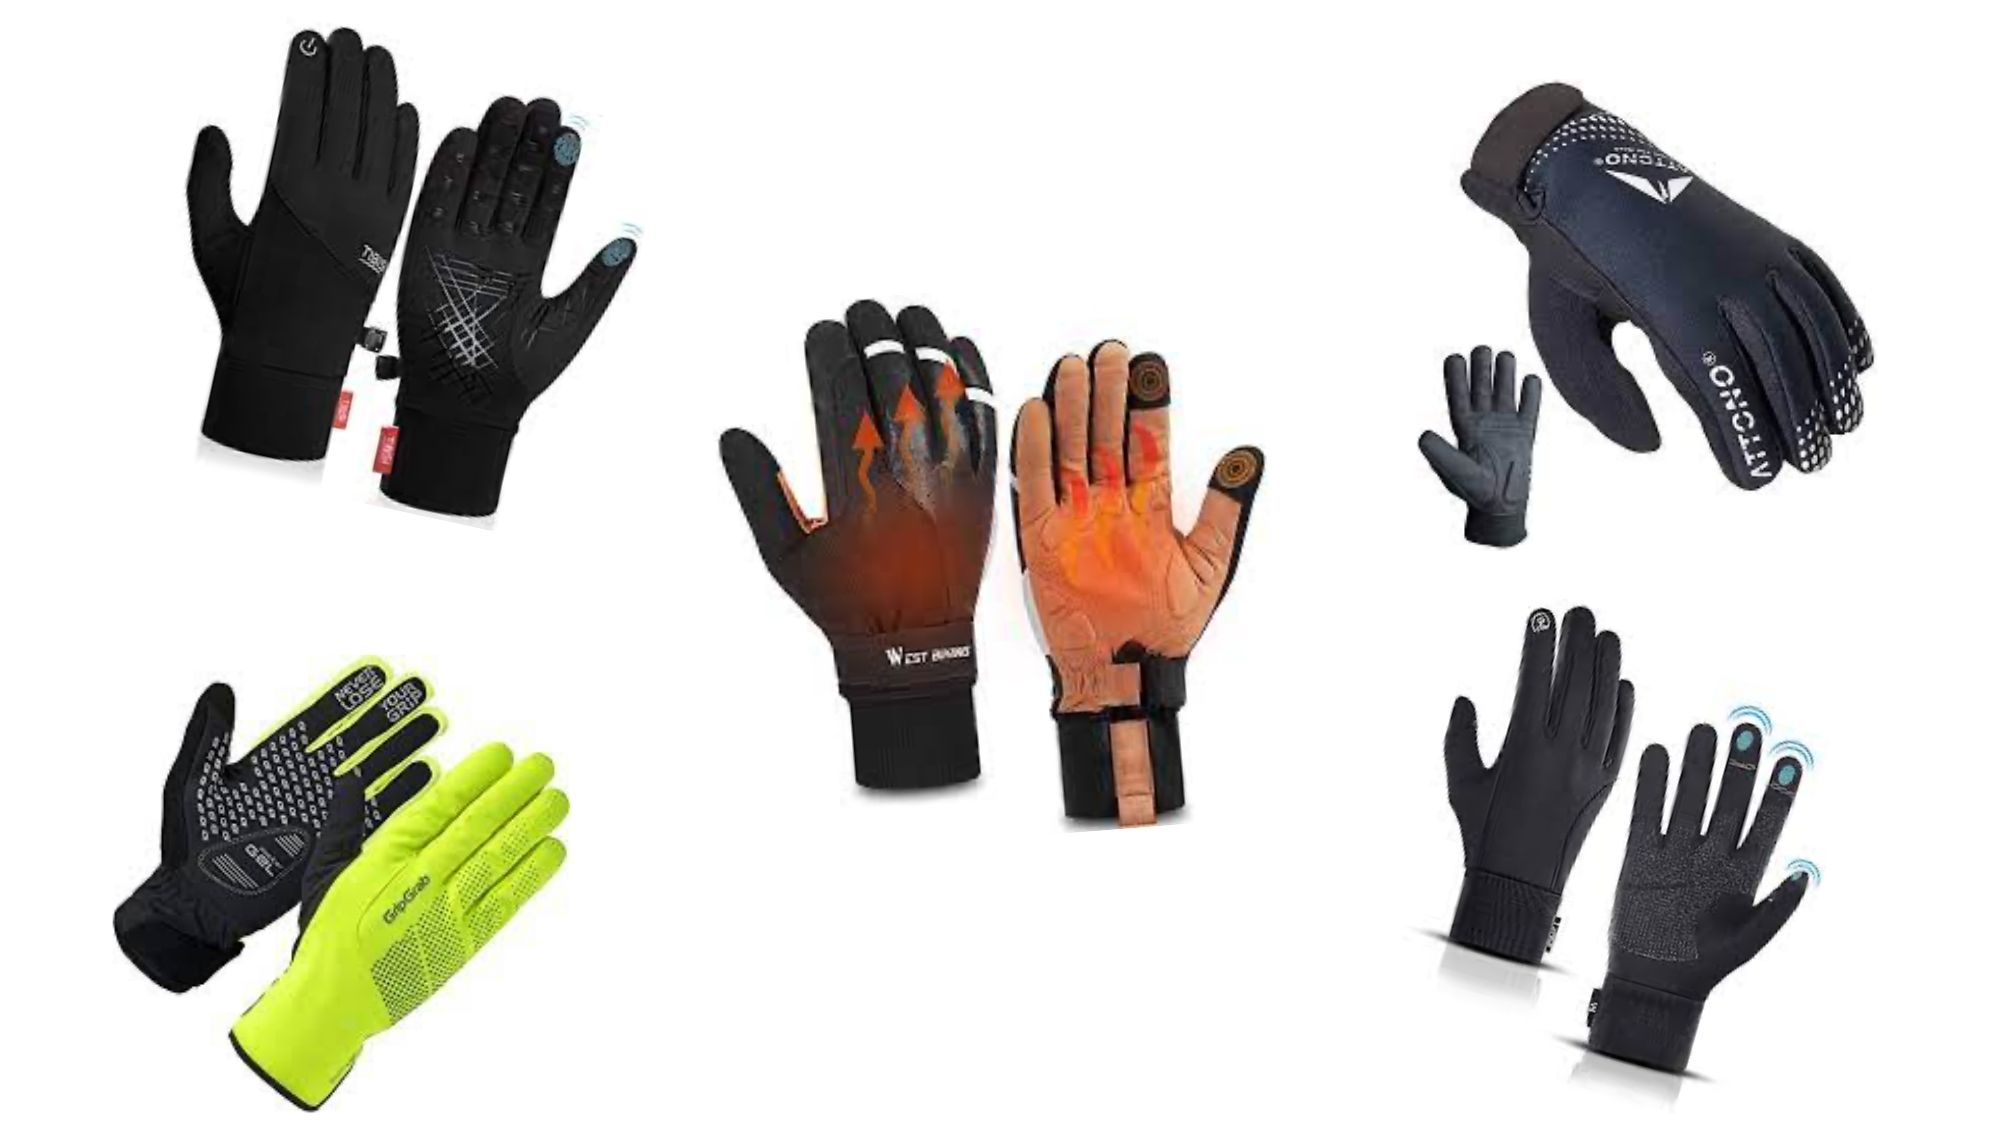 Warm Winter Sporthandschuhe Anti-Rutsch Touchscreen Handschuhe,Winterhandschuhe für Radfahren,Laufen und Reiten Herren und Damen,Schwarz VBIGER Fahrradhandschuhe Unisex